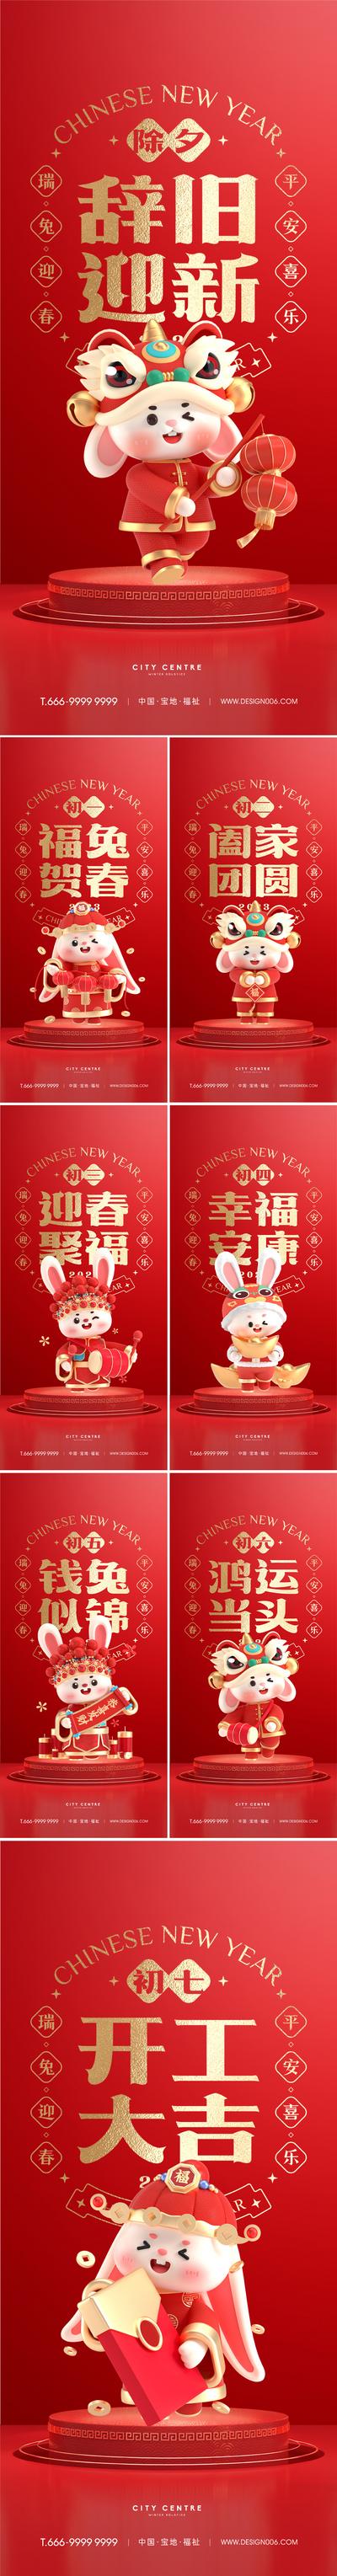 【南门网】海报 房地产 中国传统节日 新 除夕 初一 兔年 兔子 年俗 系列